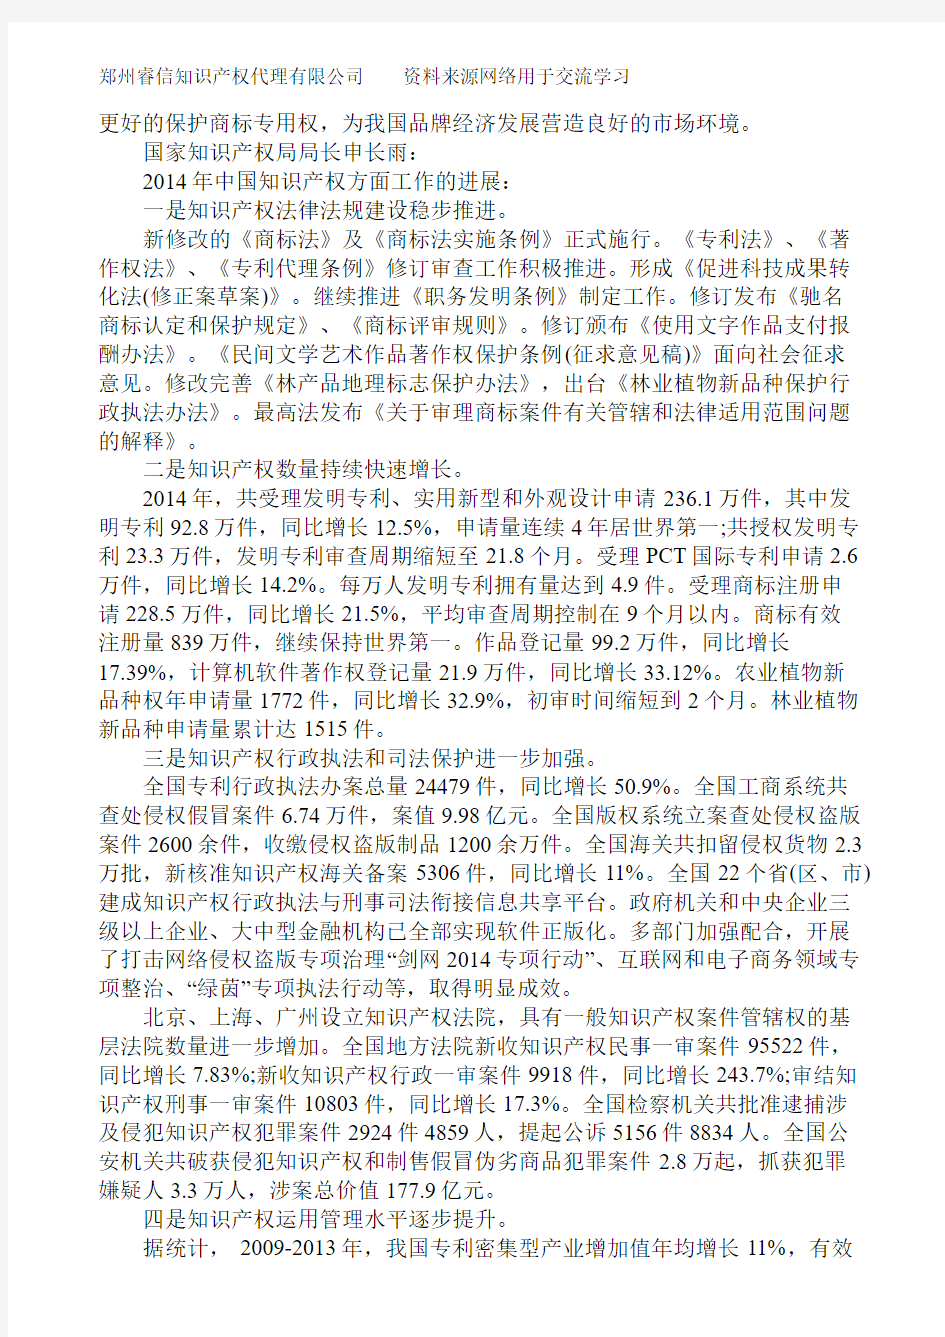 2014年中国商标专利版权发展状况